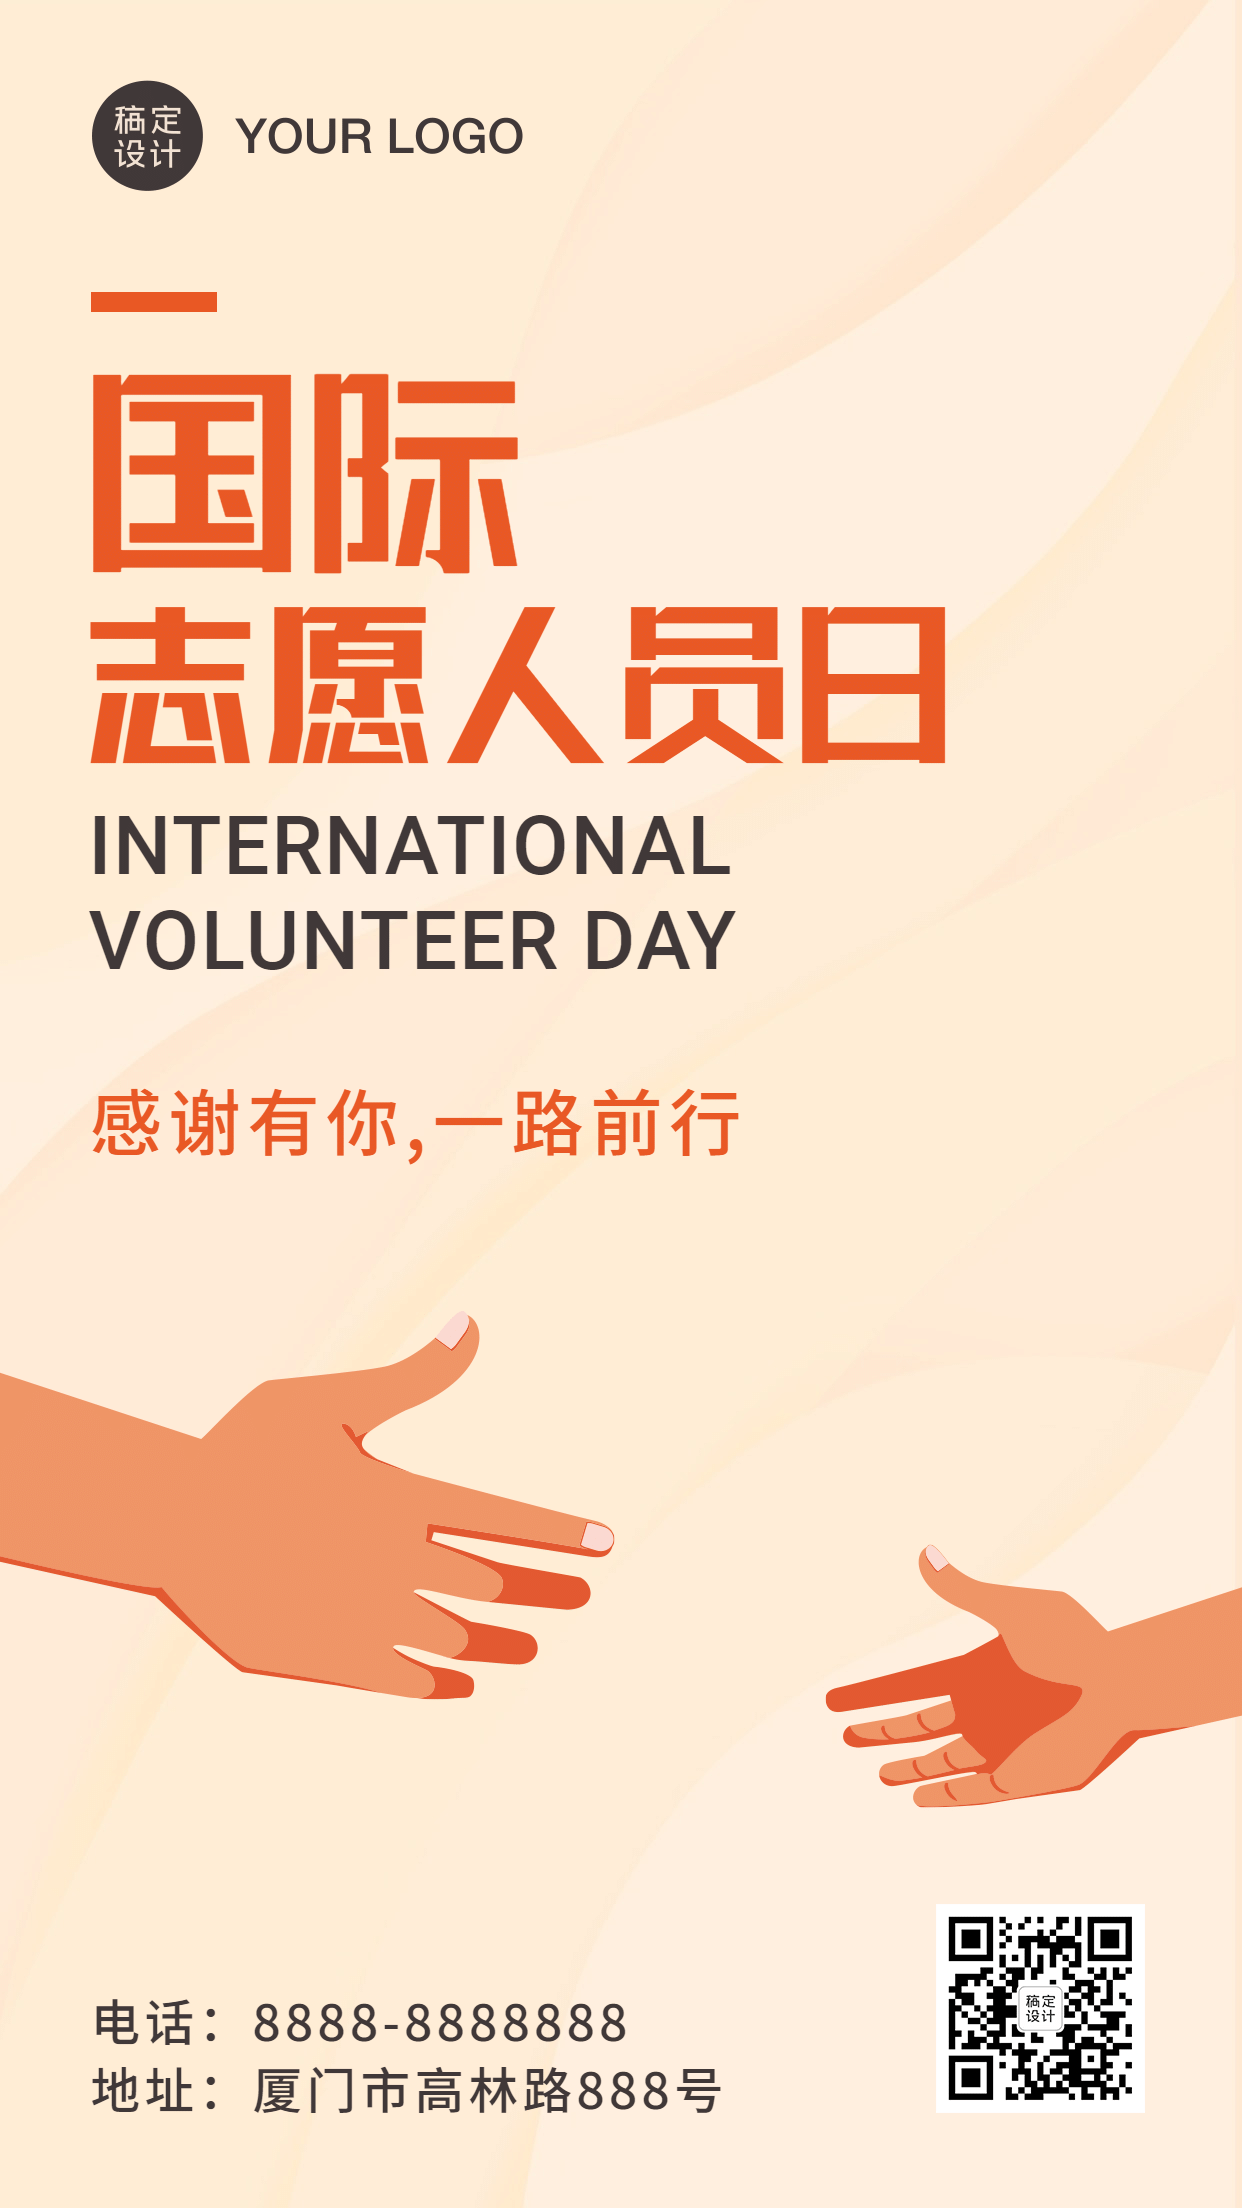 国际志愿者日共同前进宣传手绘手机海报预览效果